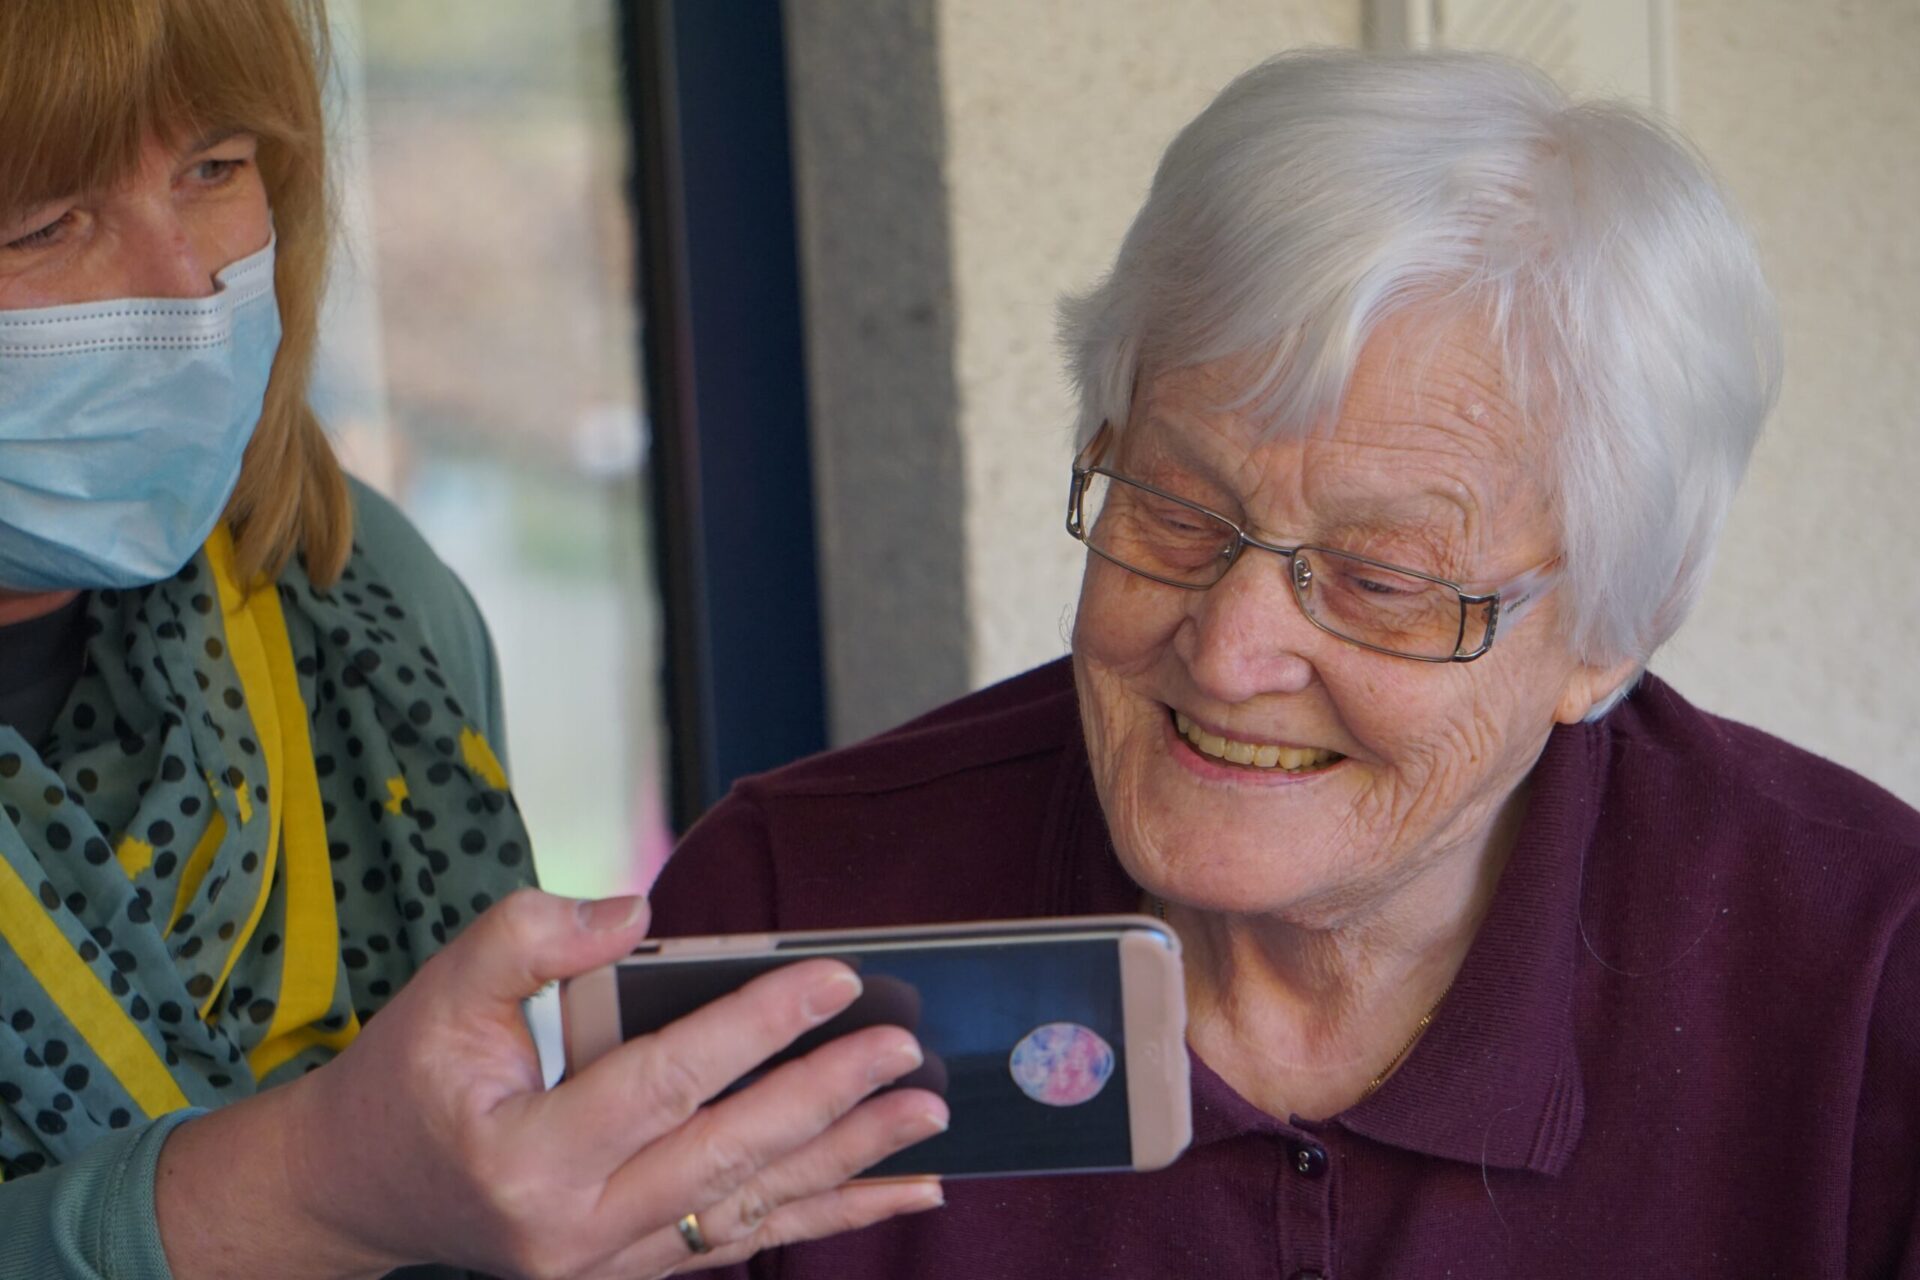 Dieses Bild zeigt eine ältere Dame, der gerade was auf einem Handy gezeigt wird als Symbolbild für Angehörige pflegen